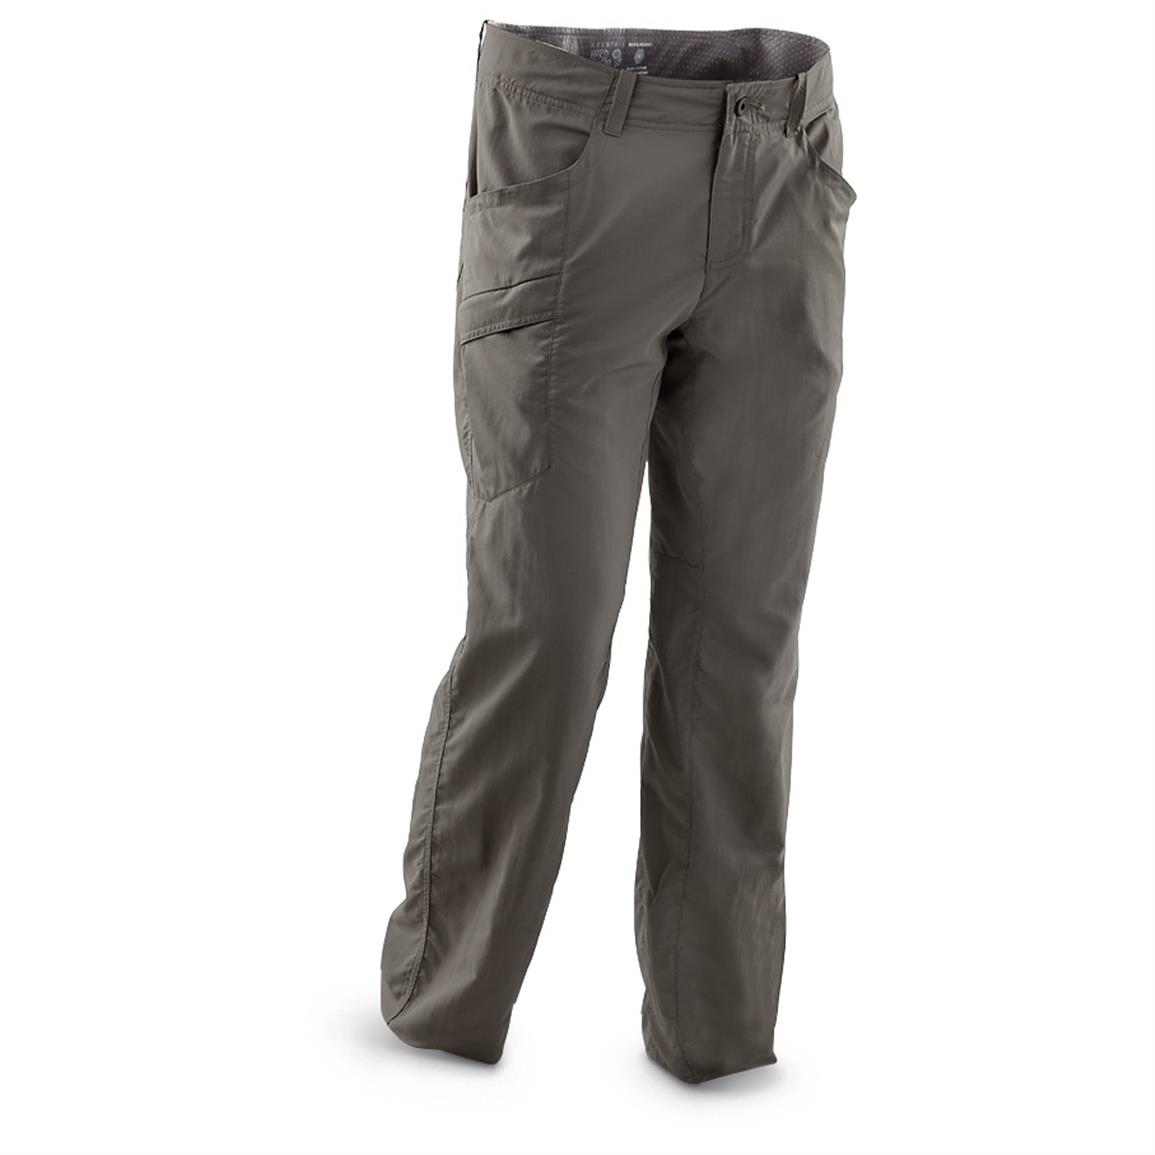 Mountain Hardwear Mesa V2 Pants 593378, Jeans & Pants at Sportsman's